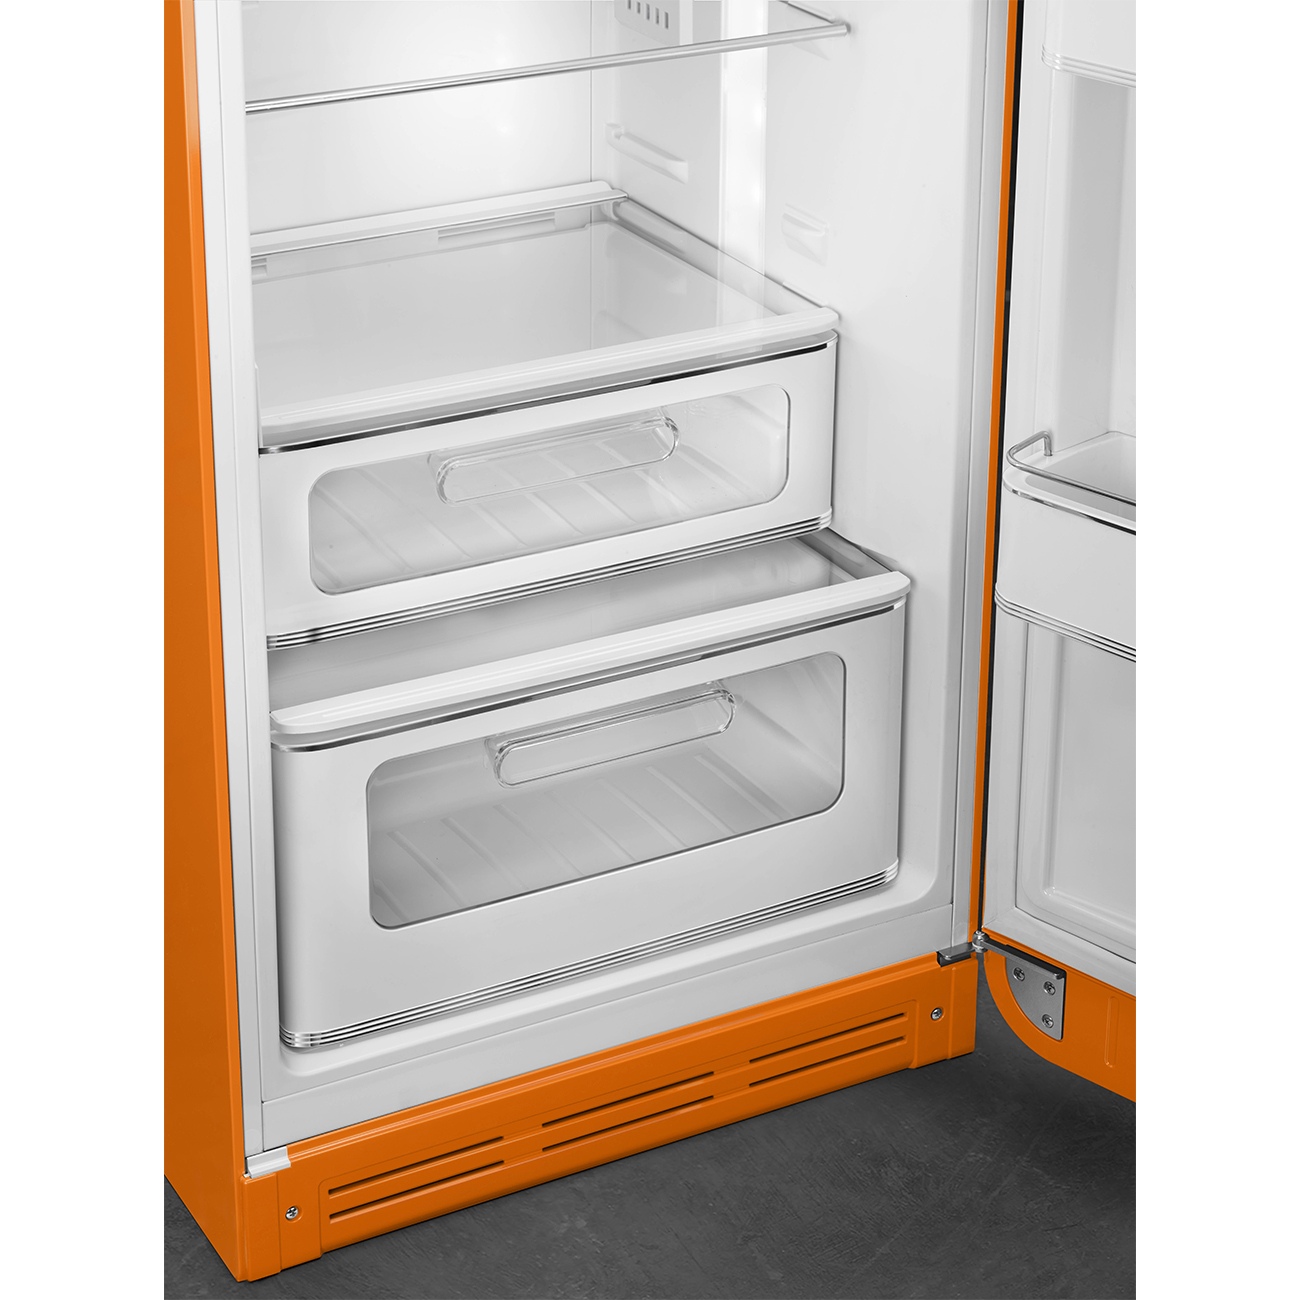 Orange refrigerator - Smeg_8